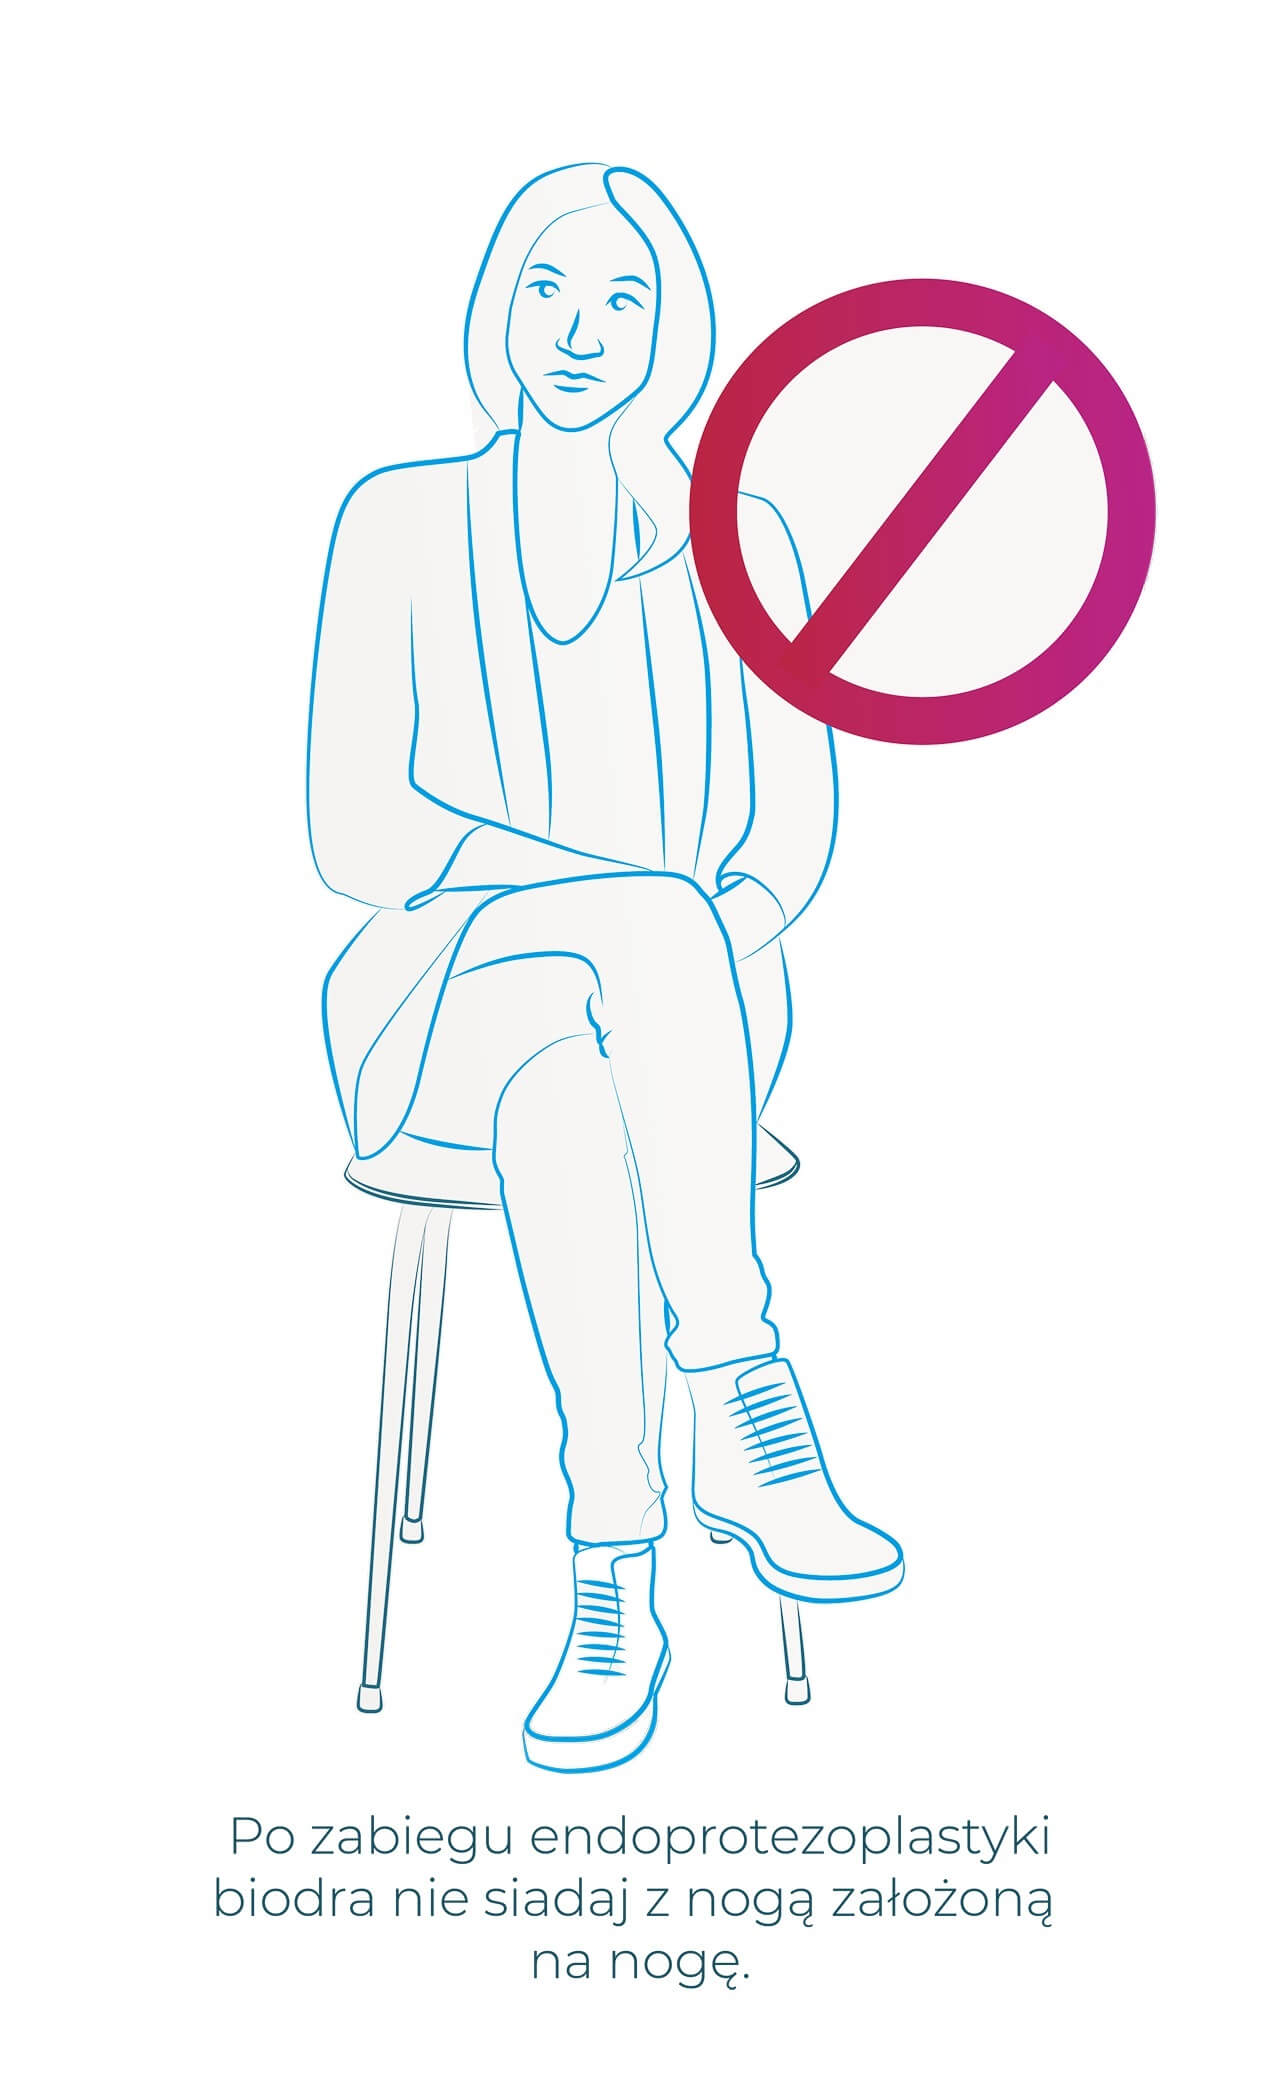 Siadanie z nogą na nogę, przywodzenie nóg, endoproteza biodra, jak siedzieć z endoprotezą